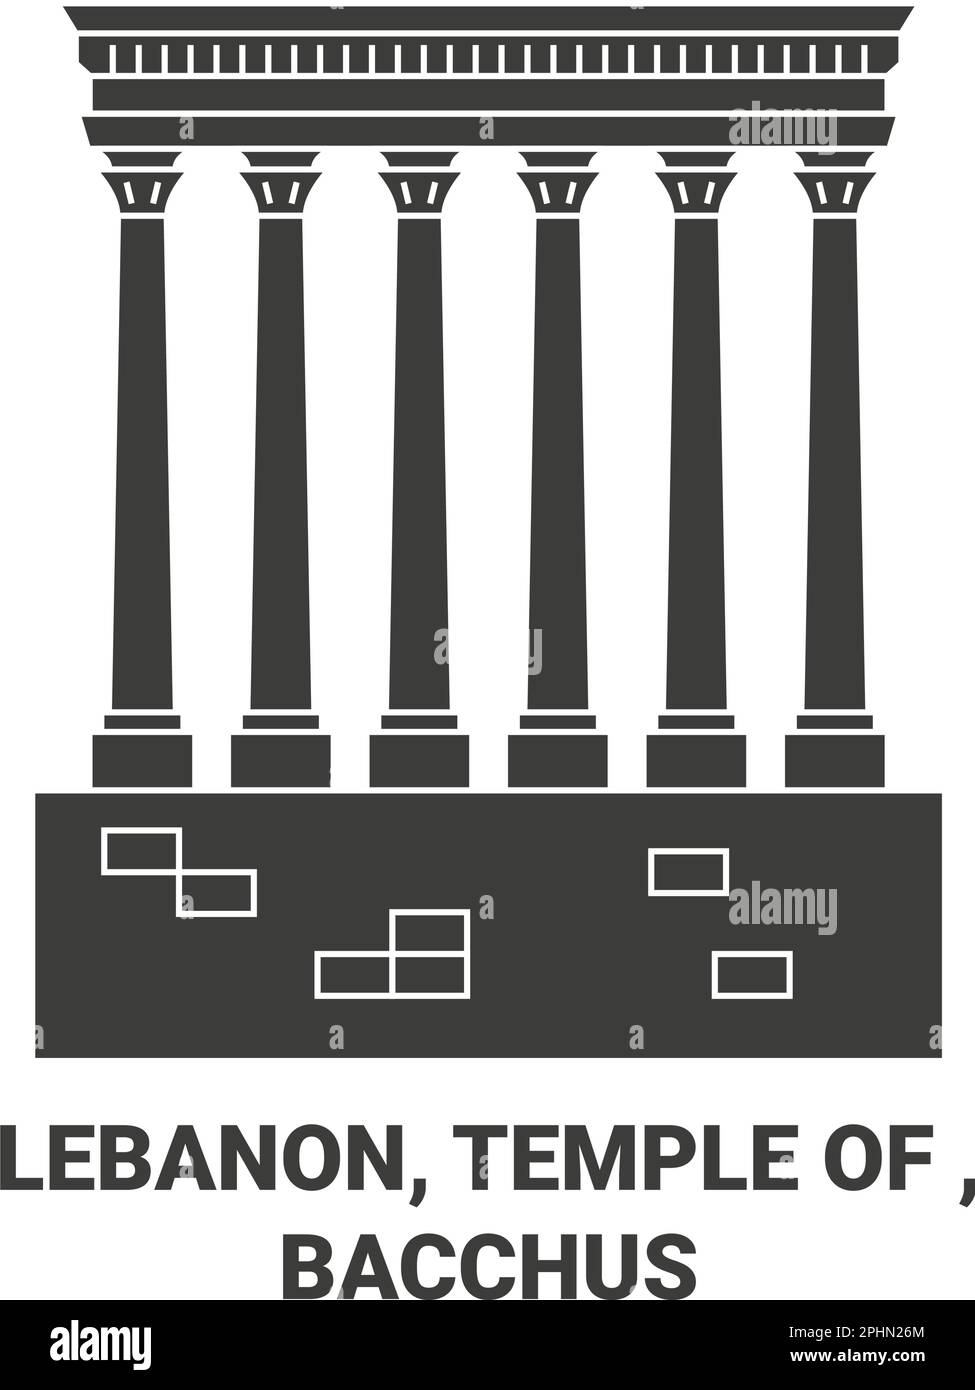 Lebanon, Temple Of , Bacchus travel landmark vector illustration Stock Vector